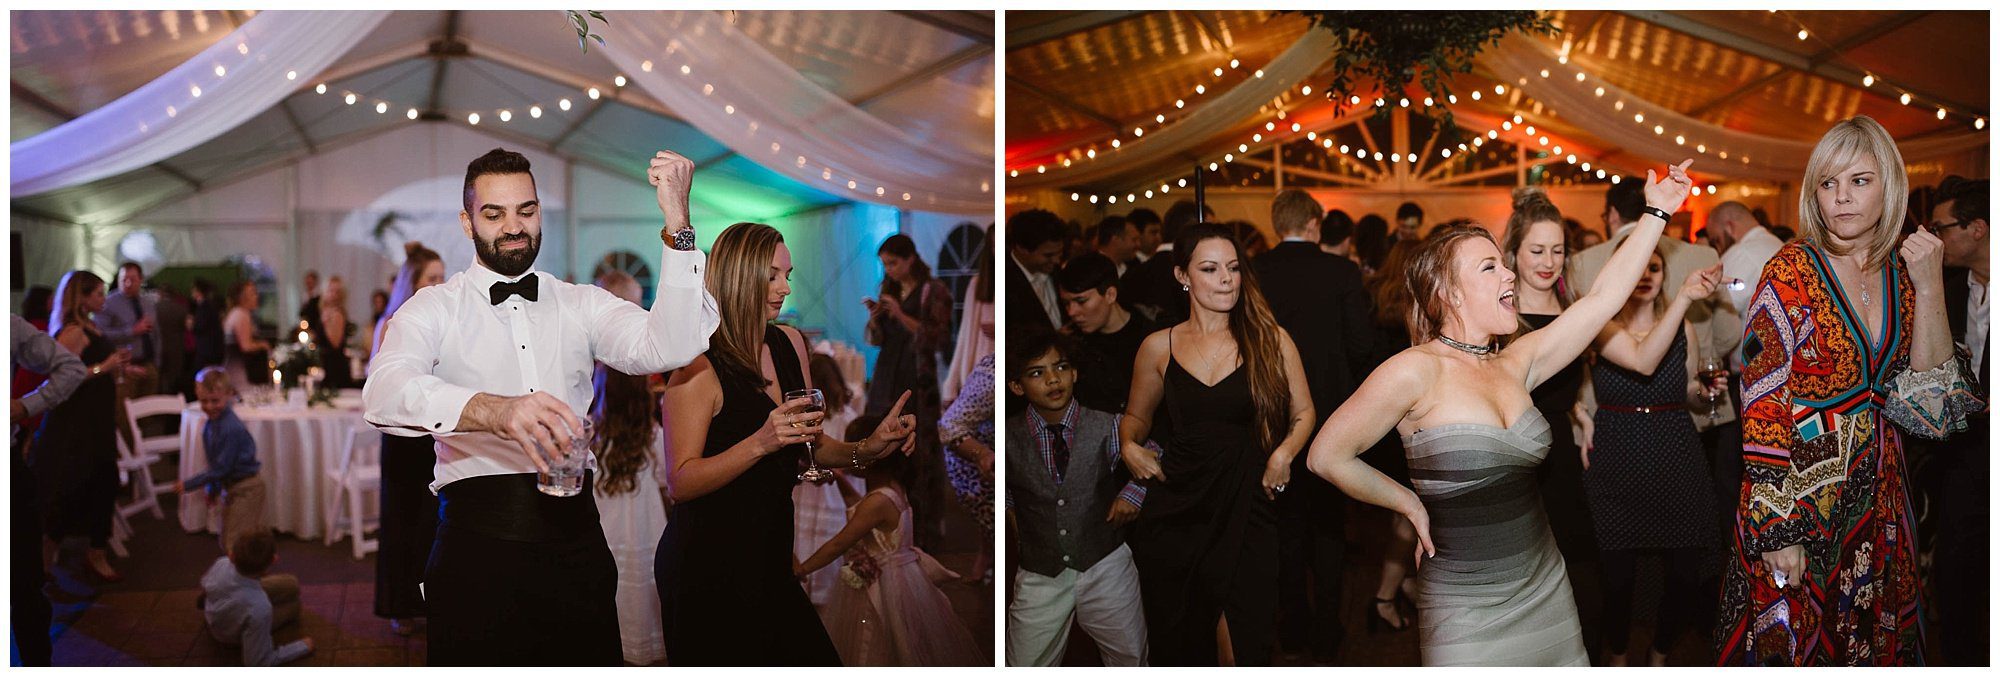 reception dancing photos at Dara's Garden Wedding